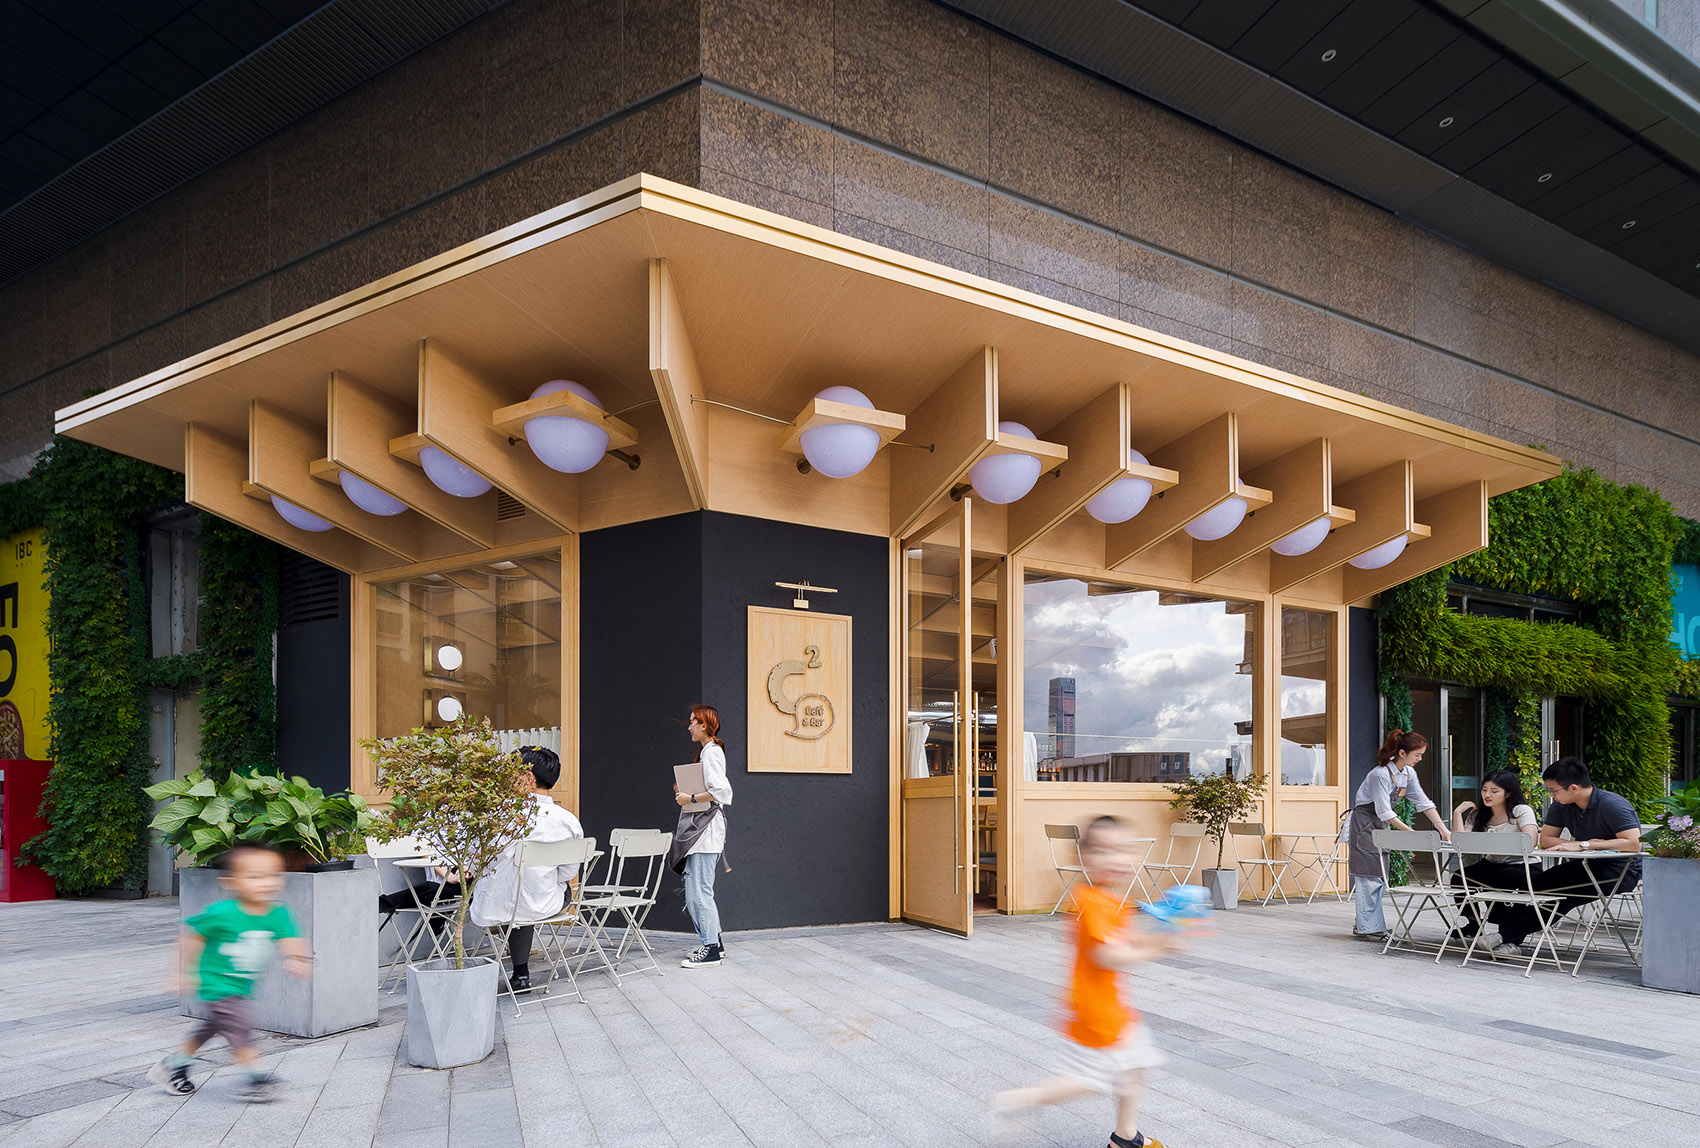 浮廊C2 Cafe &  Bar咖啡厅，深圳/专门为年轻人打造的“空中楼阁”-7